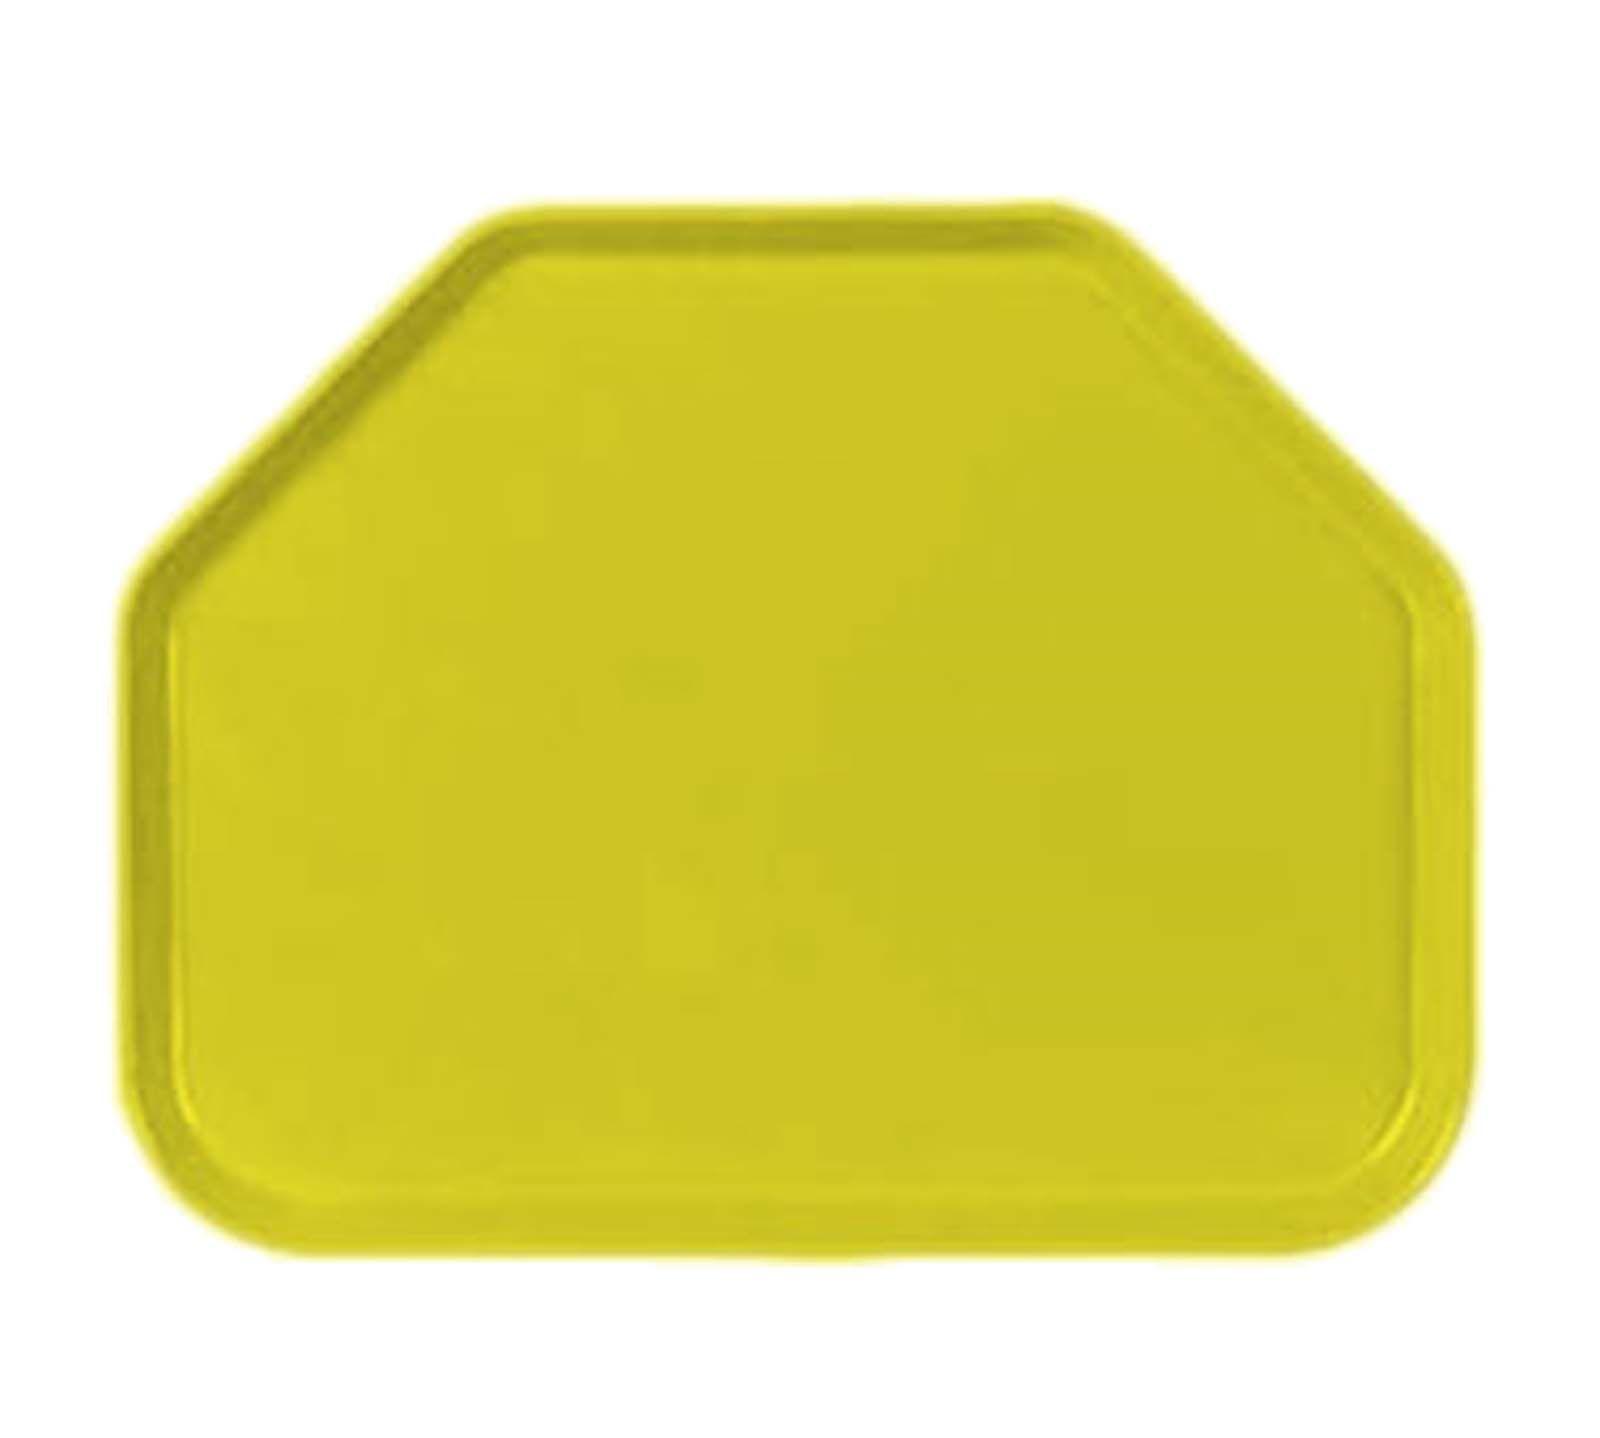 Yellow Trapezoid Logo - Carlisle 1713FG021 Yellow Trapezoid Fiberglass Glasteel Cafeteria ...